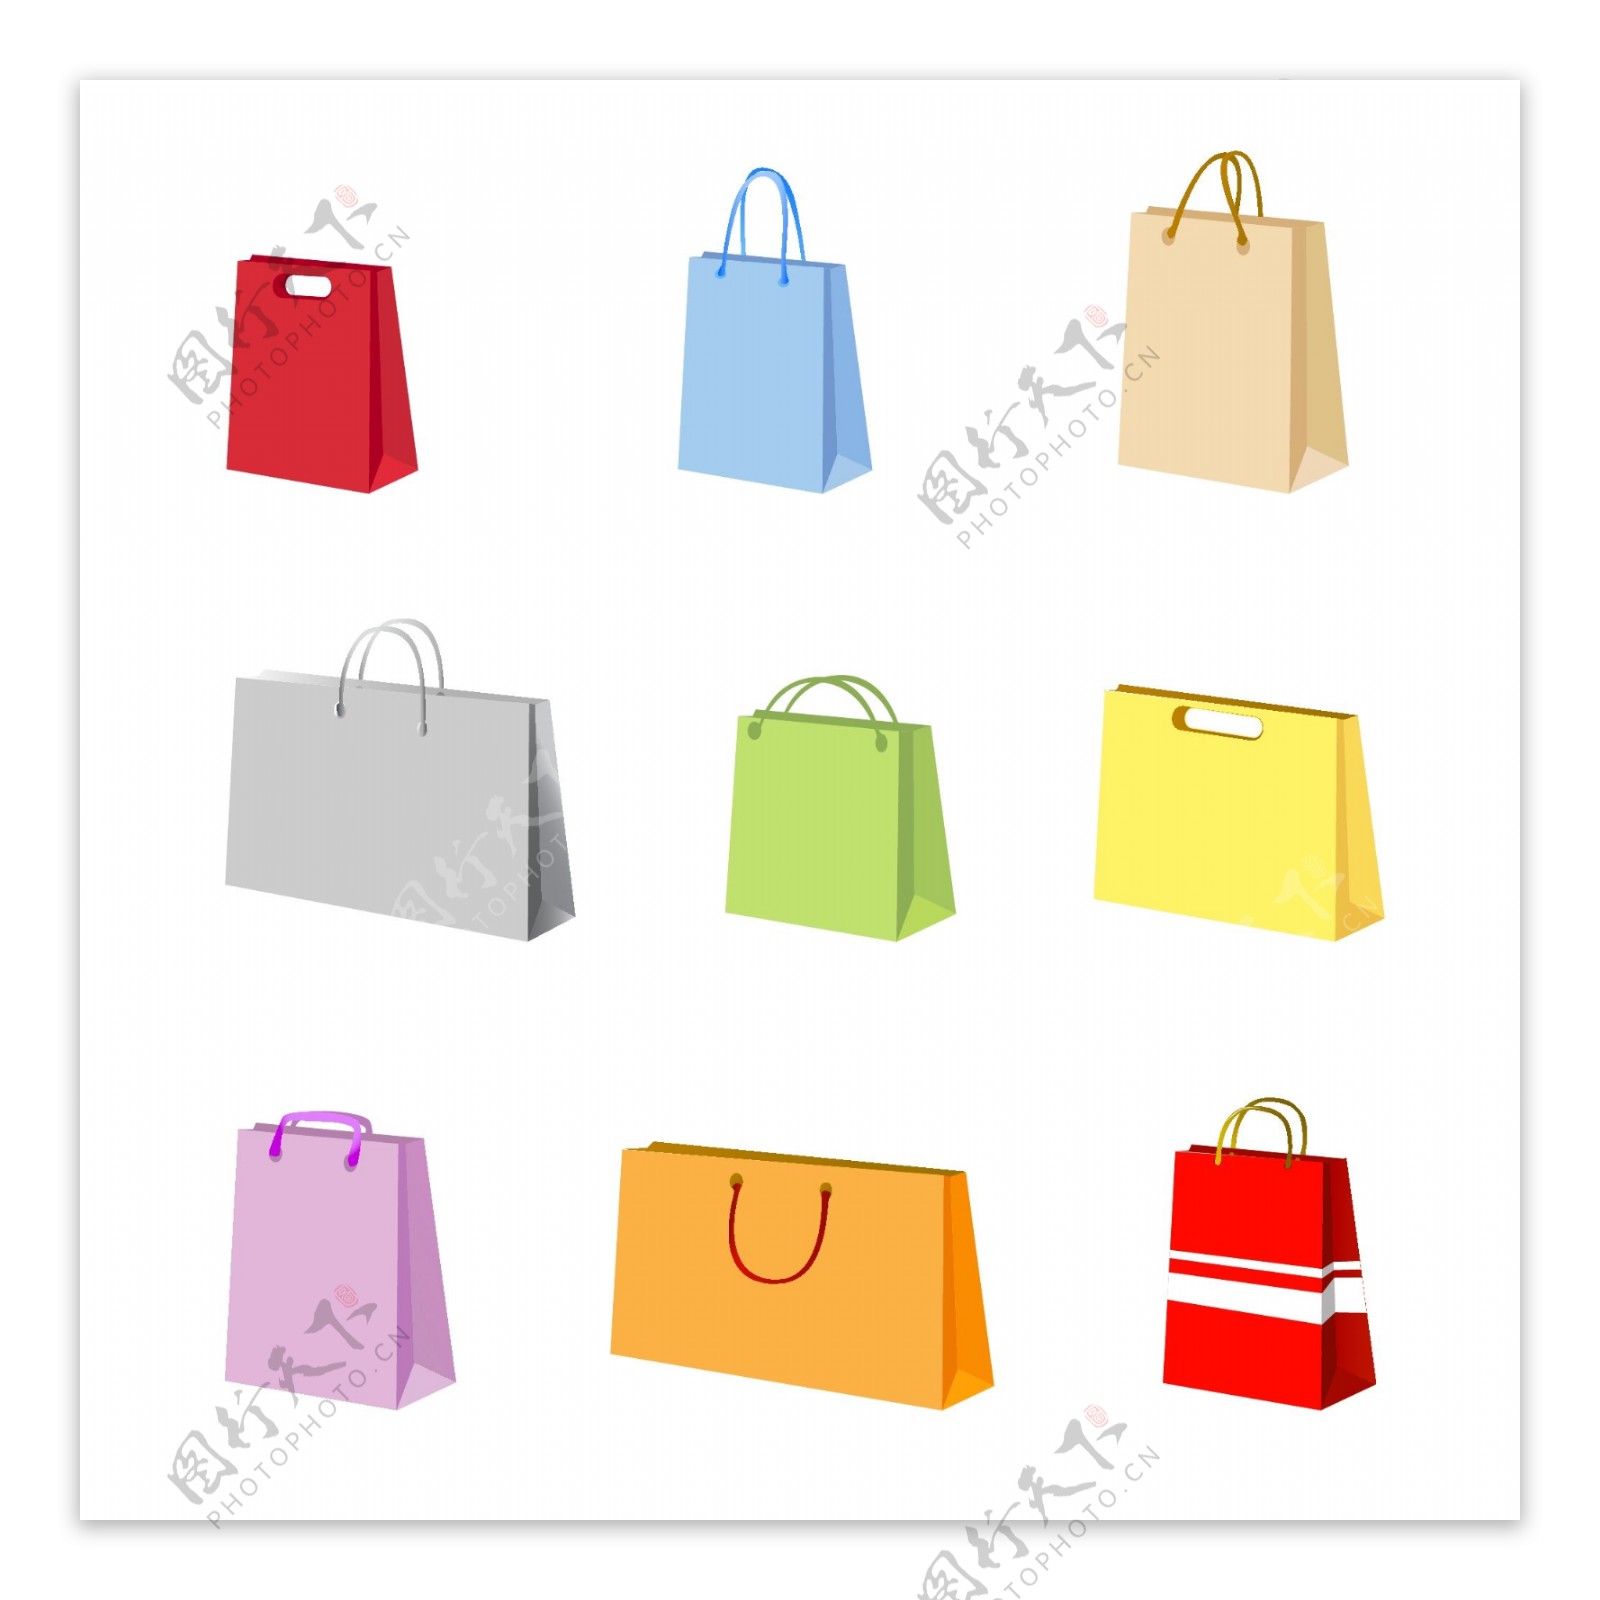 环保袋的载体材料的各种丰富多彩的袋